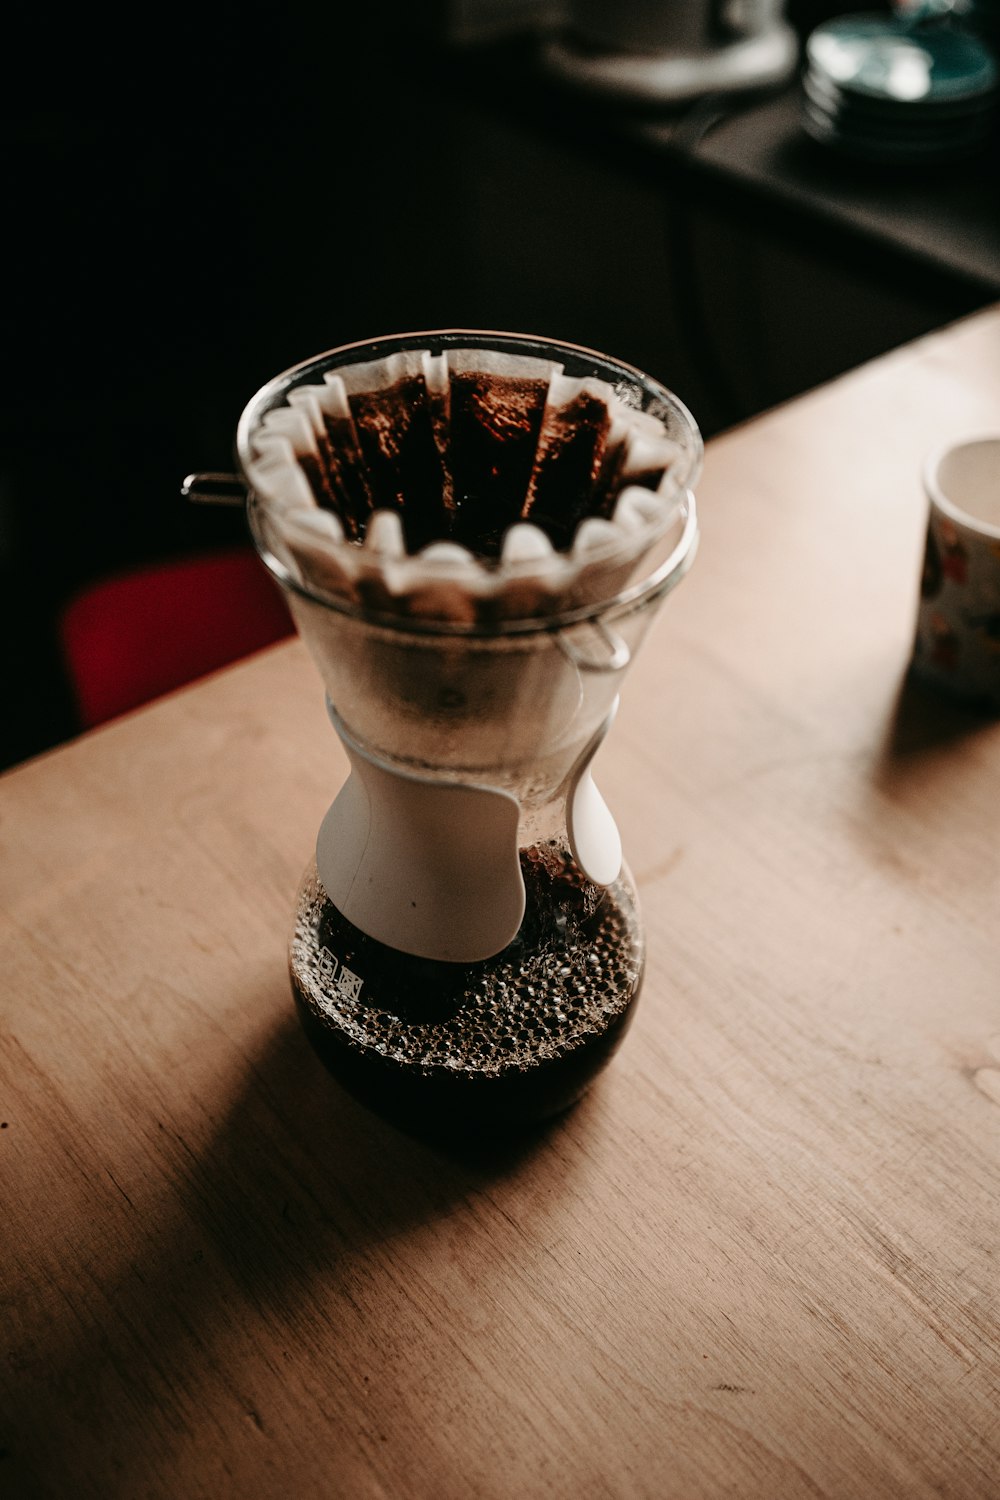 흰색 세라믹 컵에 흰색과 검은 색 아이스크림